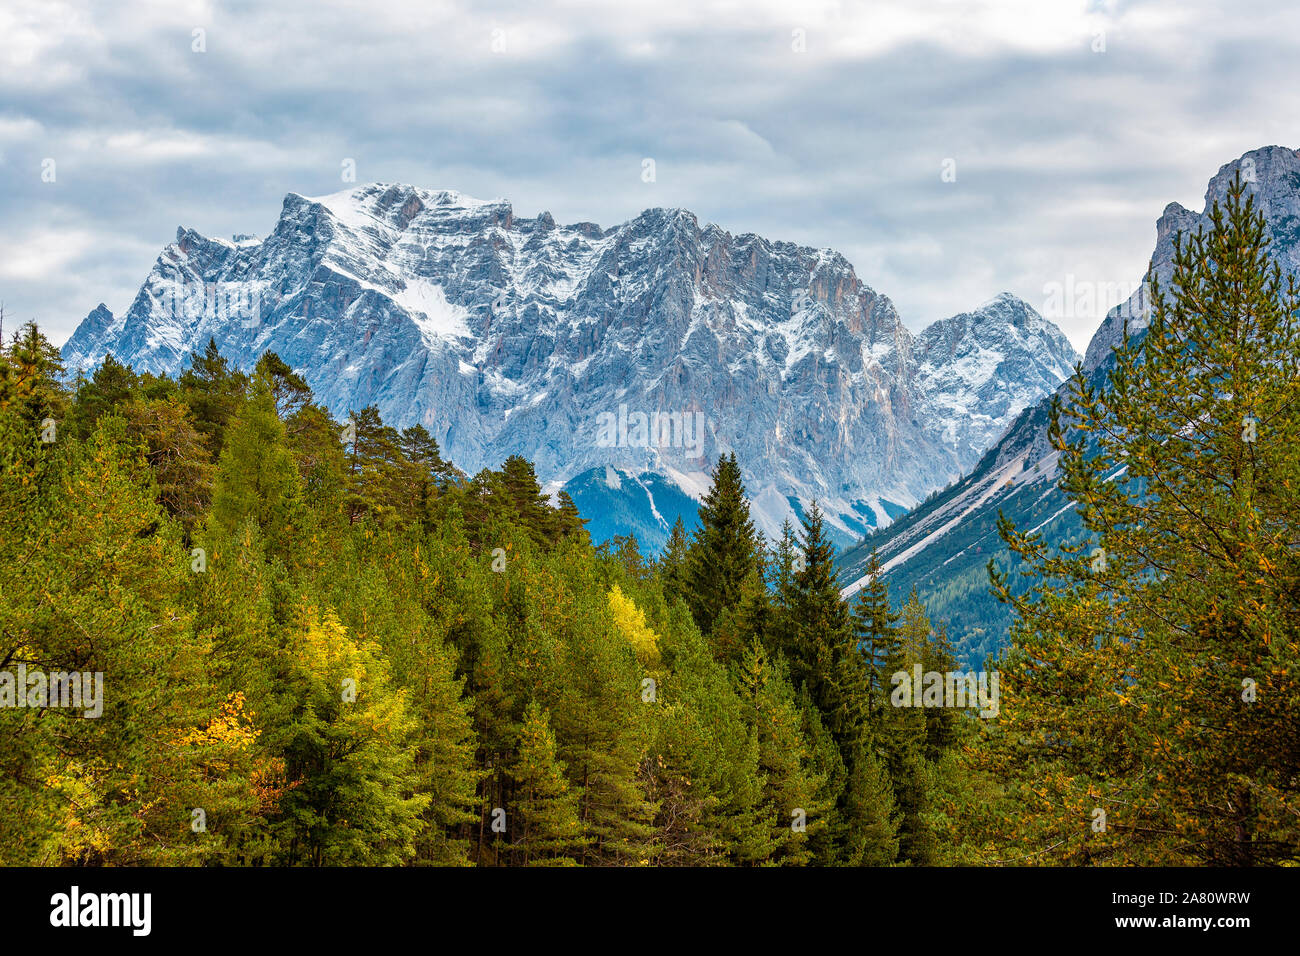 Colori d'autunno forest e cime innevate delle Alpi contro un pesante cielo molto nuvoloso Foto Stock